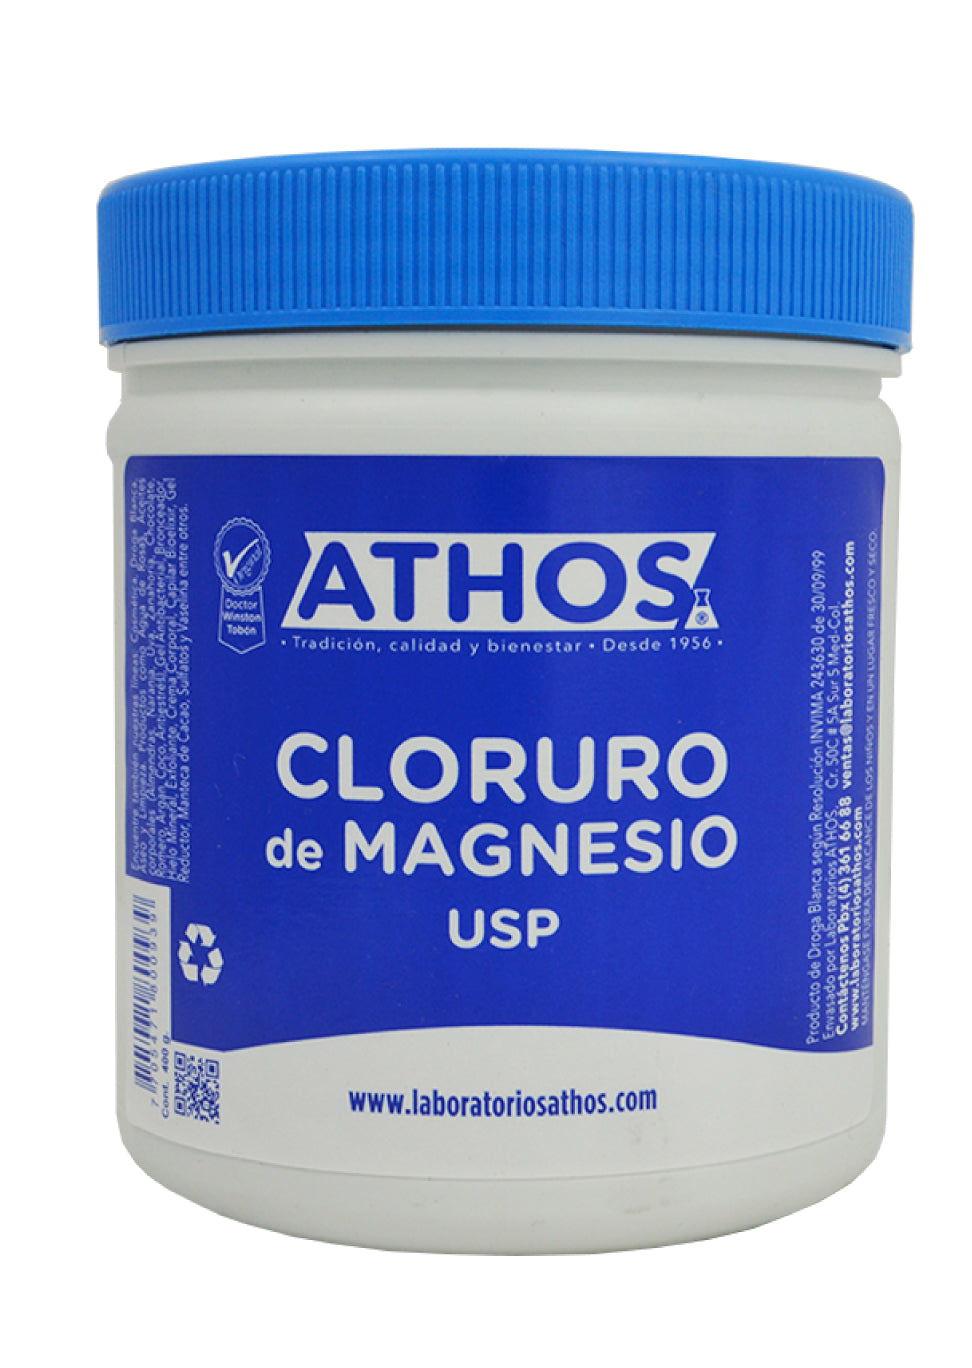 Transición Expresión licencia Cloruro de Magnesio y para qué sirve | Laboratorios Athos